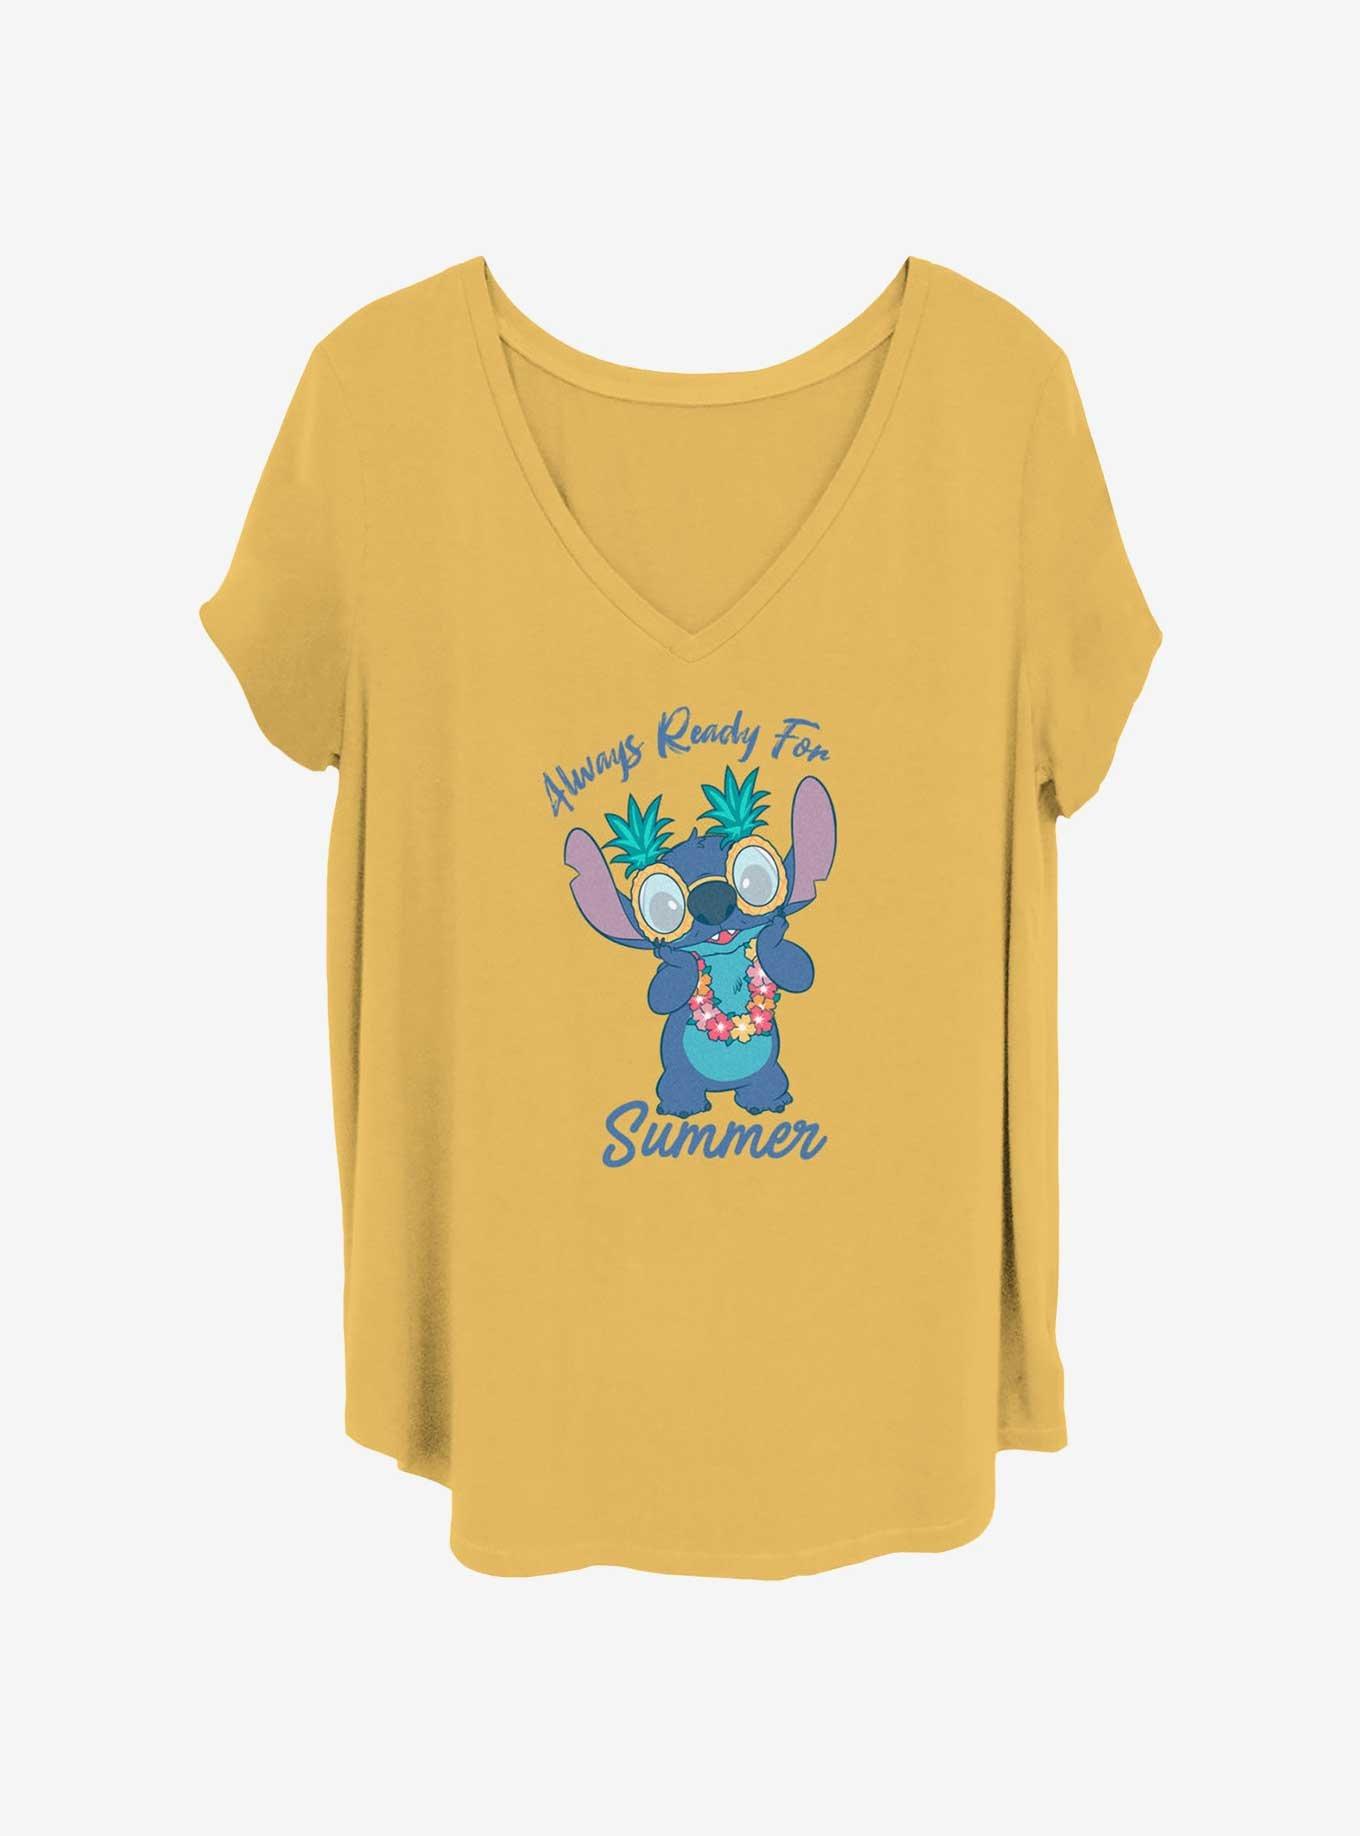 Disney Lilo & Stitch Always Ready For Summer Girls T-Shirt Plus